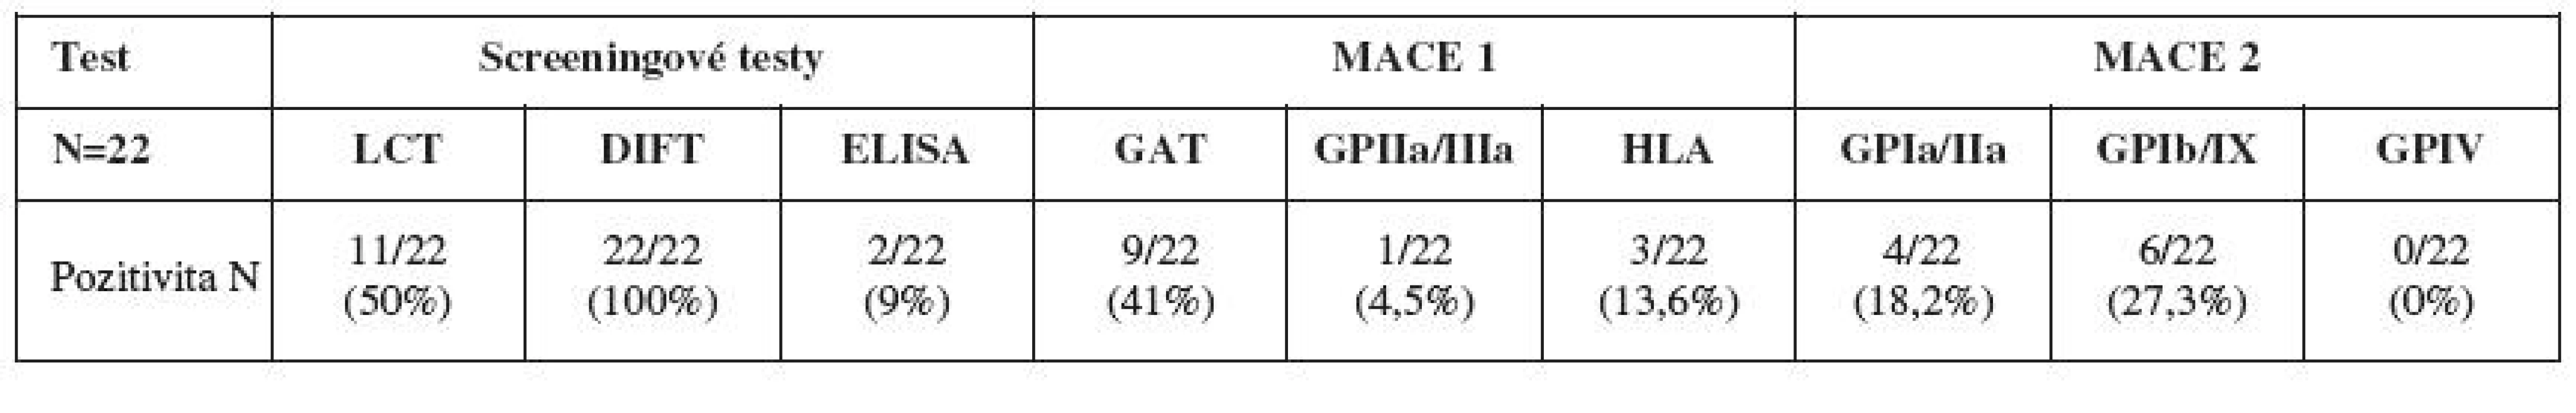 Souhrn výsledků screeningových testů a identifikačních testů MACE 1 a MACE 2